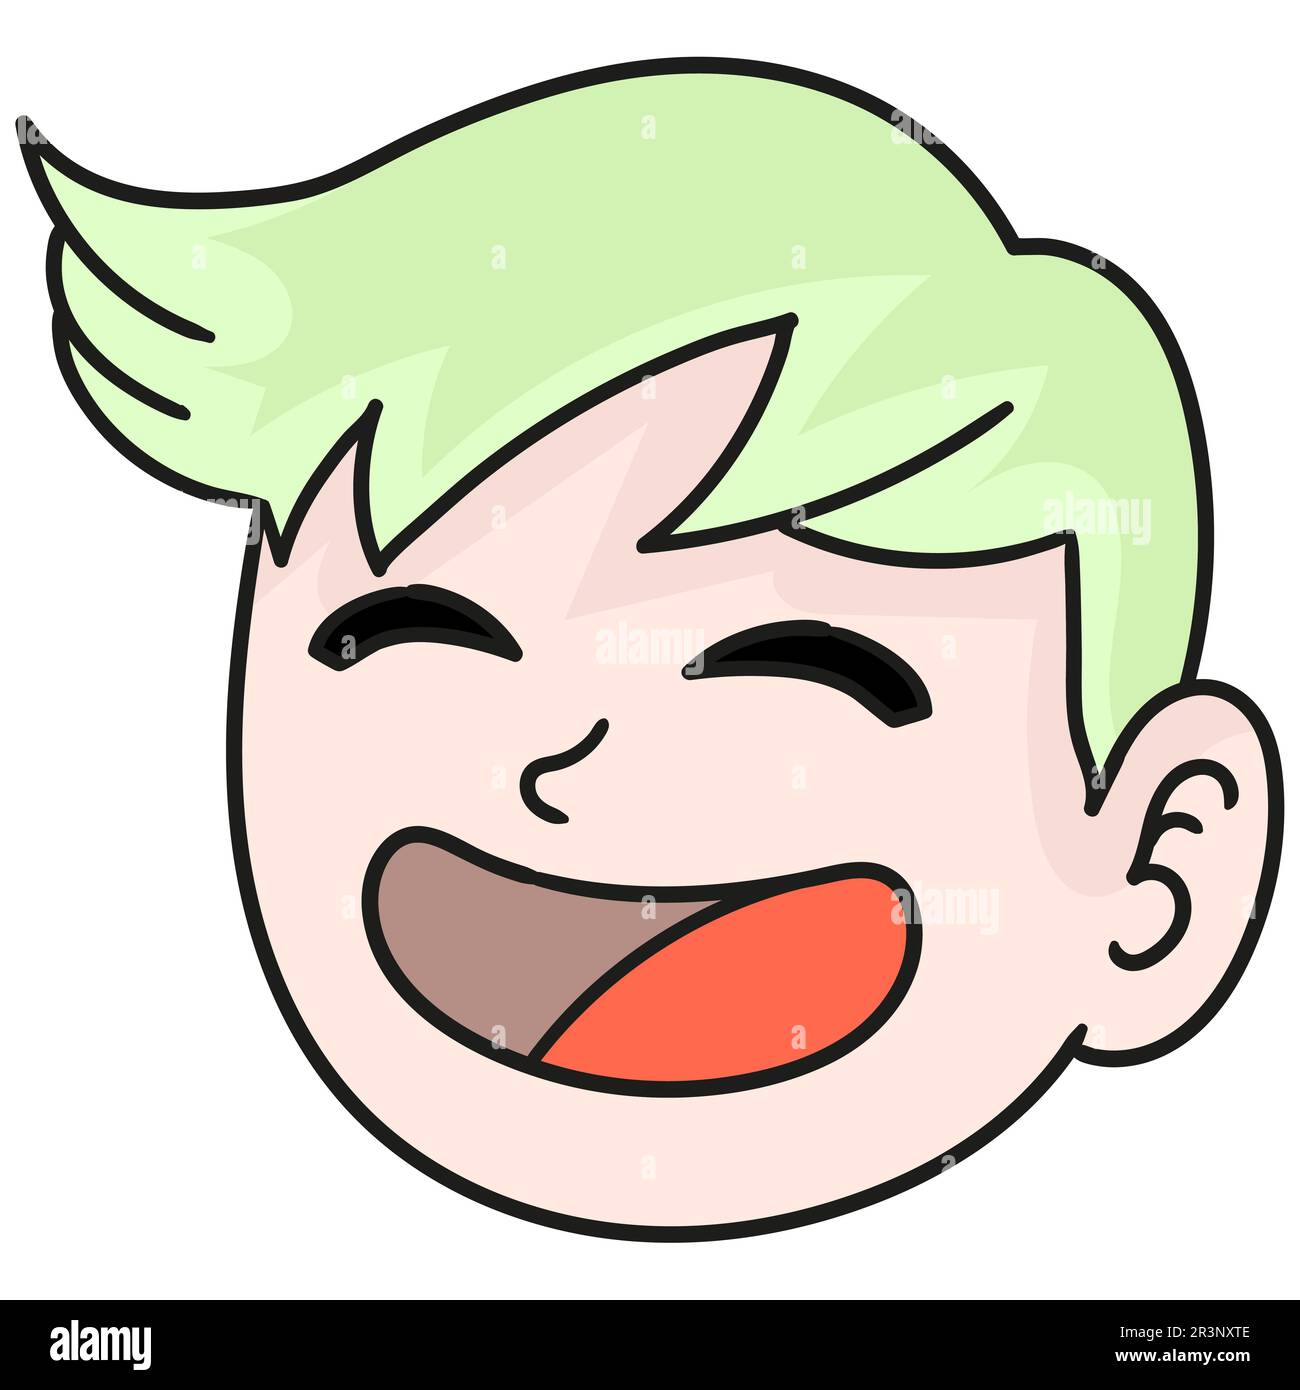 Junge-Kopf-Emoticon lachte laut. Bild des doodle-Symbols Stockfoto